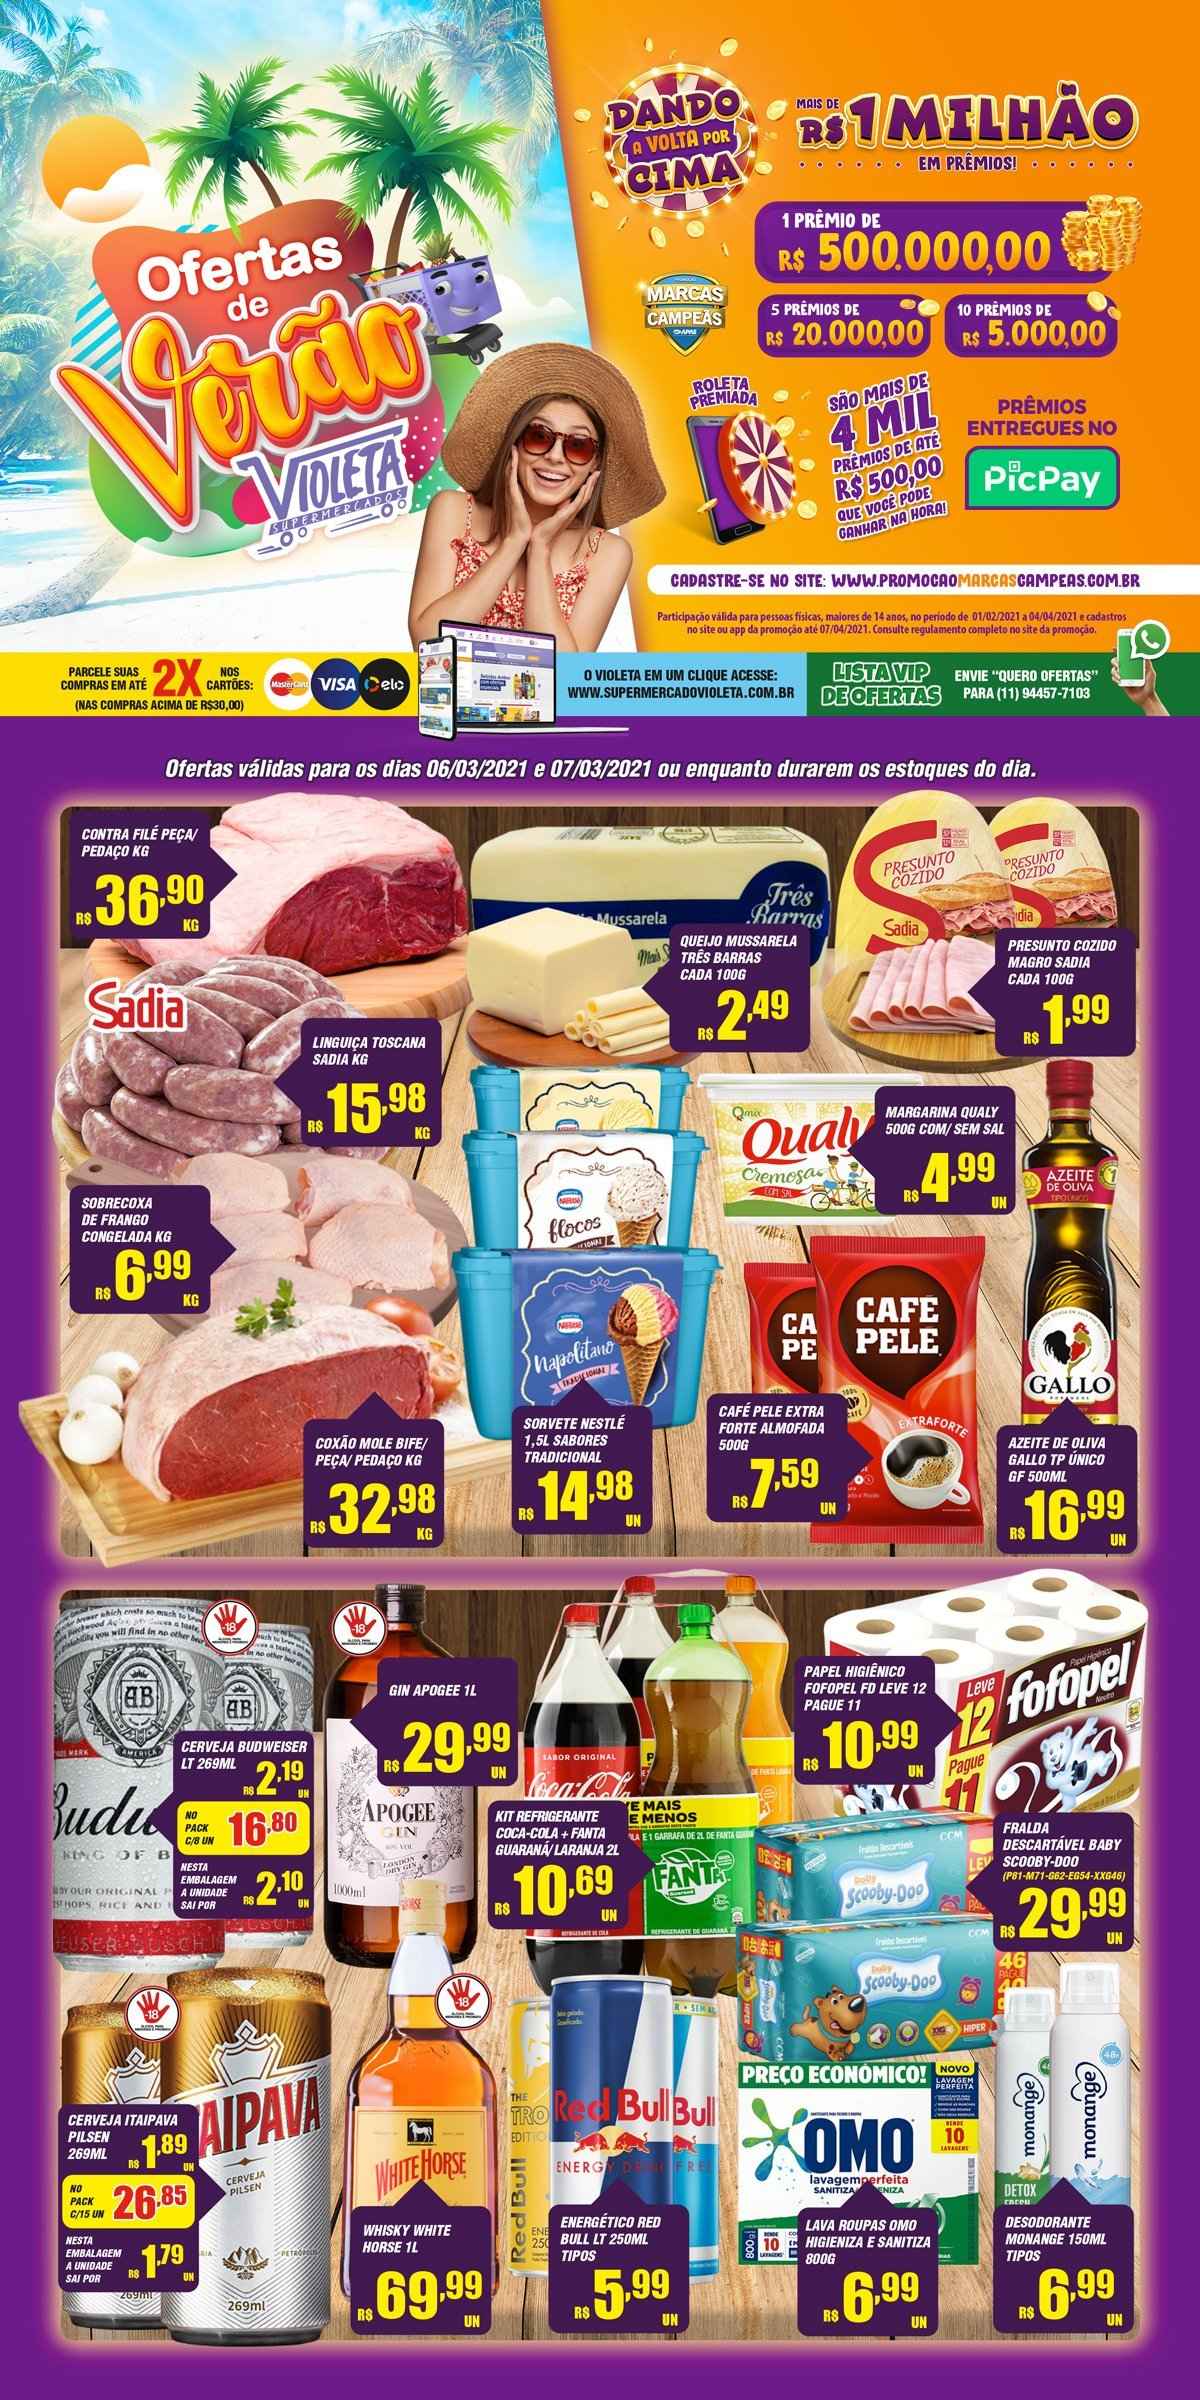 Encarte Supermercado Violeta  - 06.03.2021 - 07.03.2021.